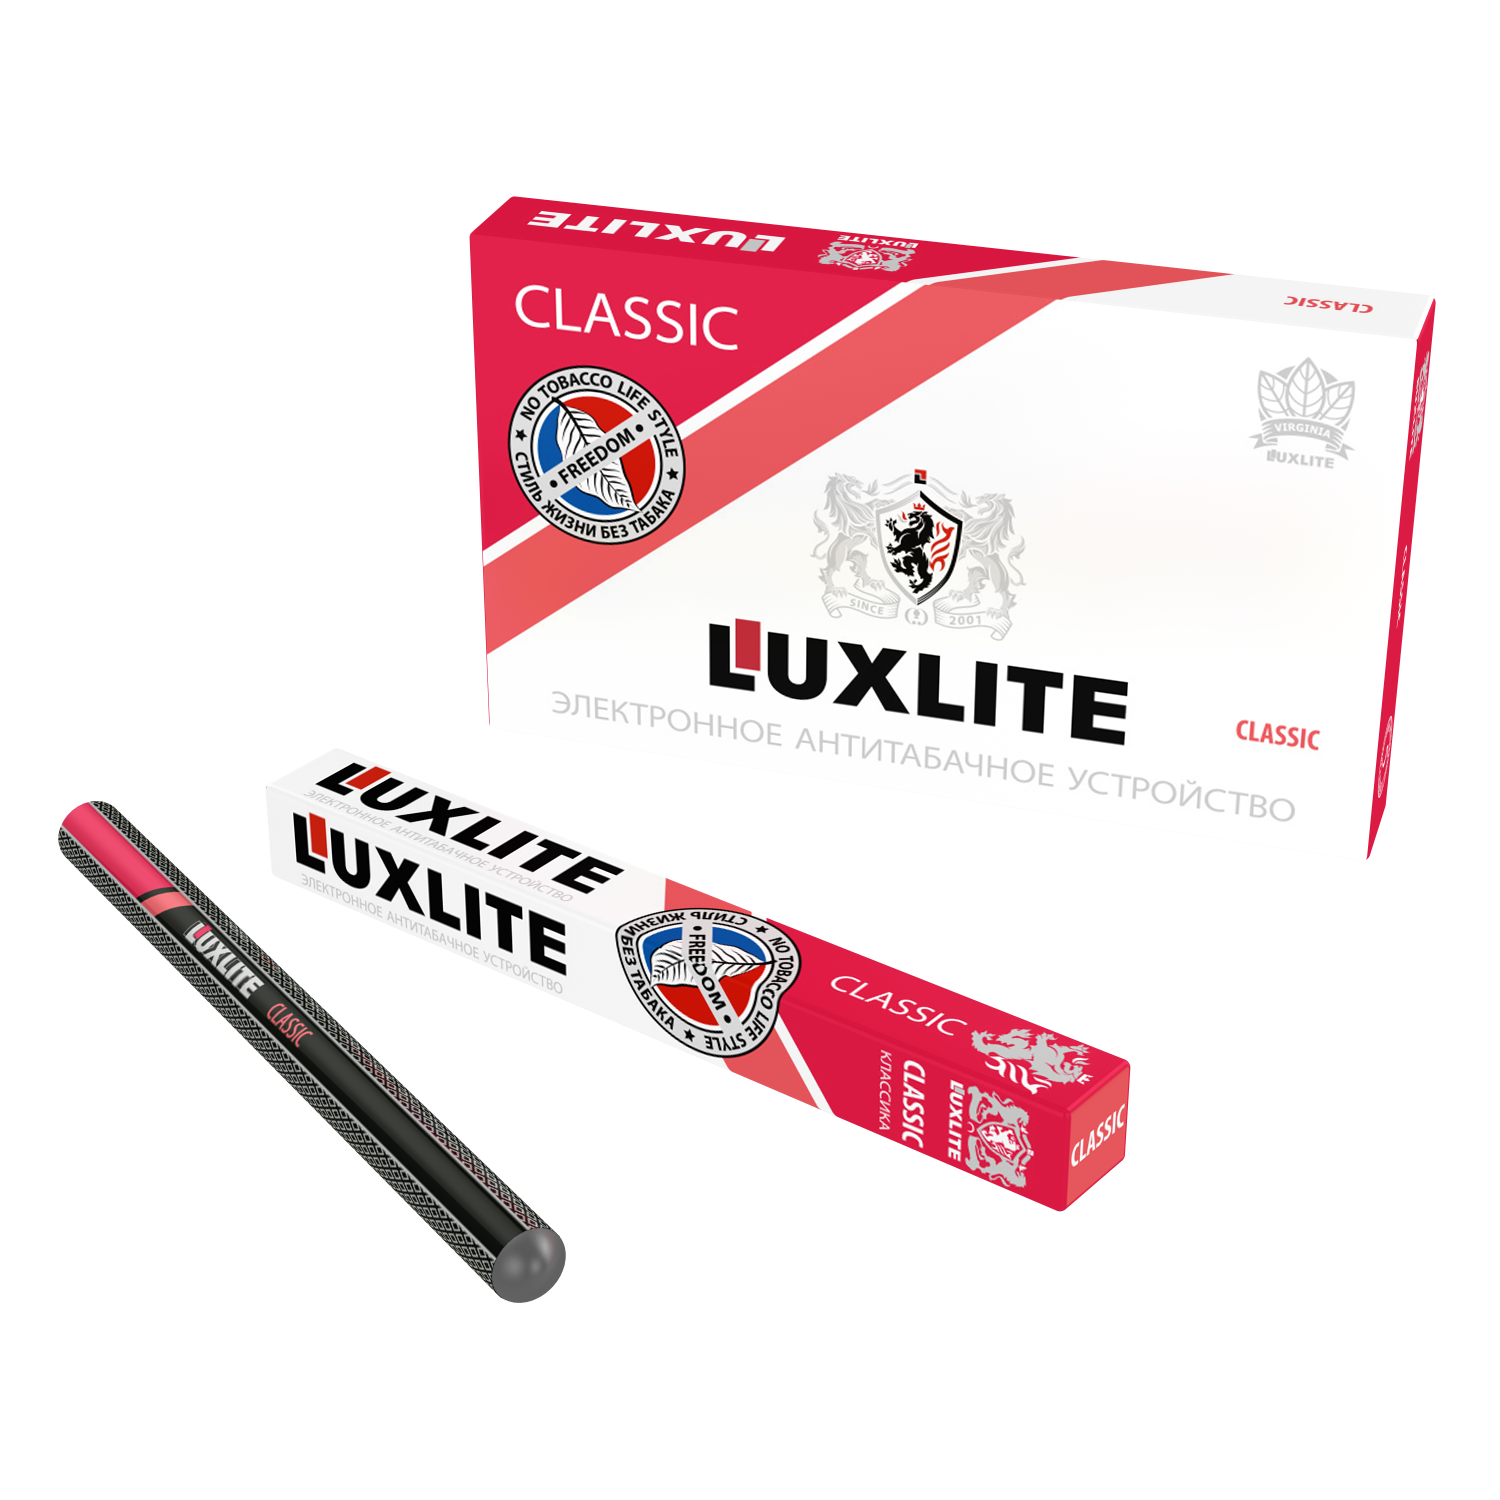 Одноразовая сигарета купить москва. Одноразовые электронные сигареты Люкслайт. Электронная сигарета Luxlite Classic. Одноразовые сигареты Luxlite. Luxlite электронные сигареты без никотина.